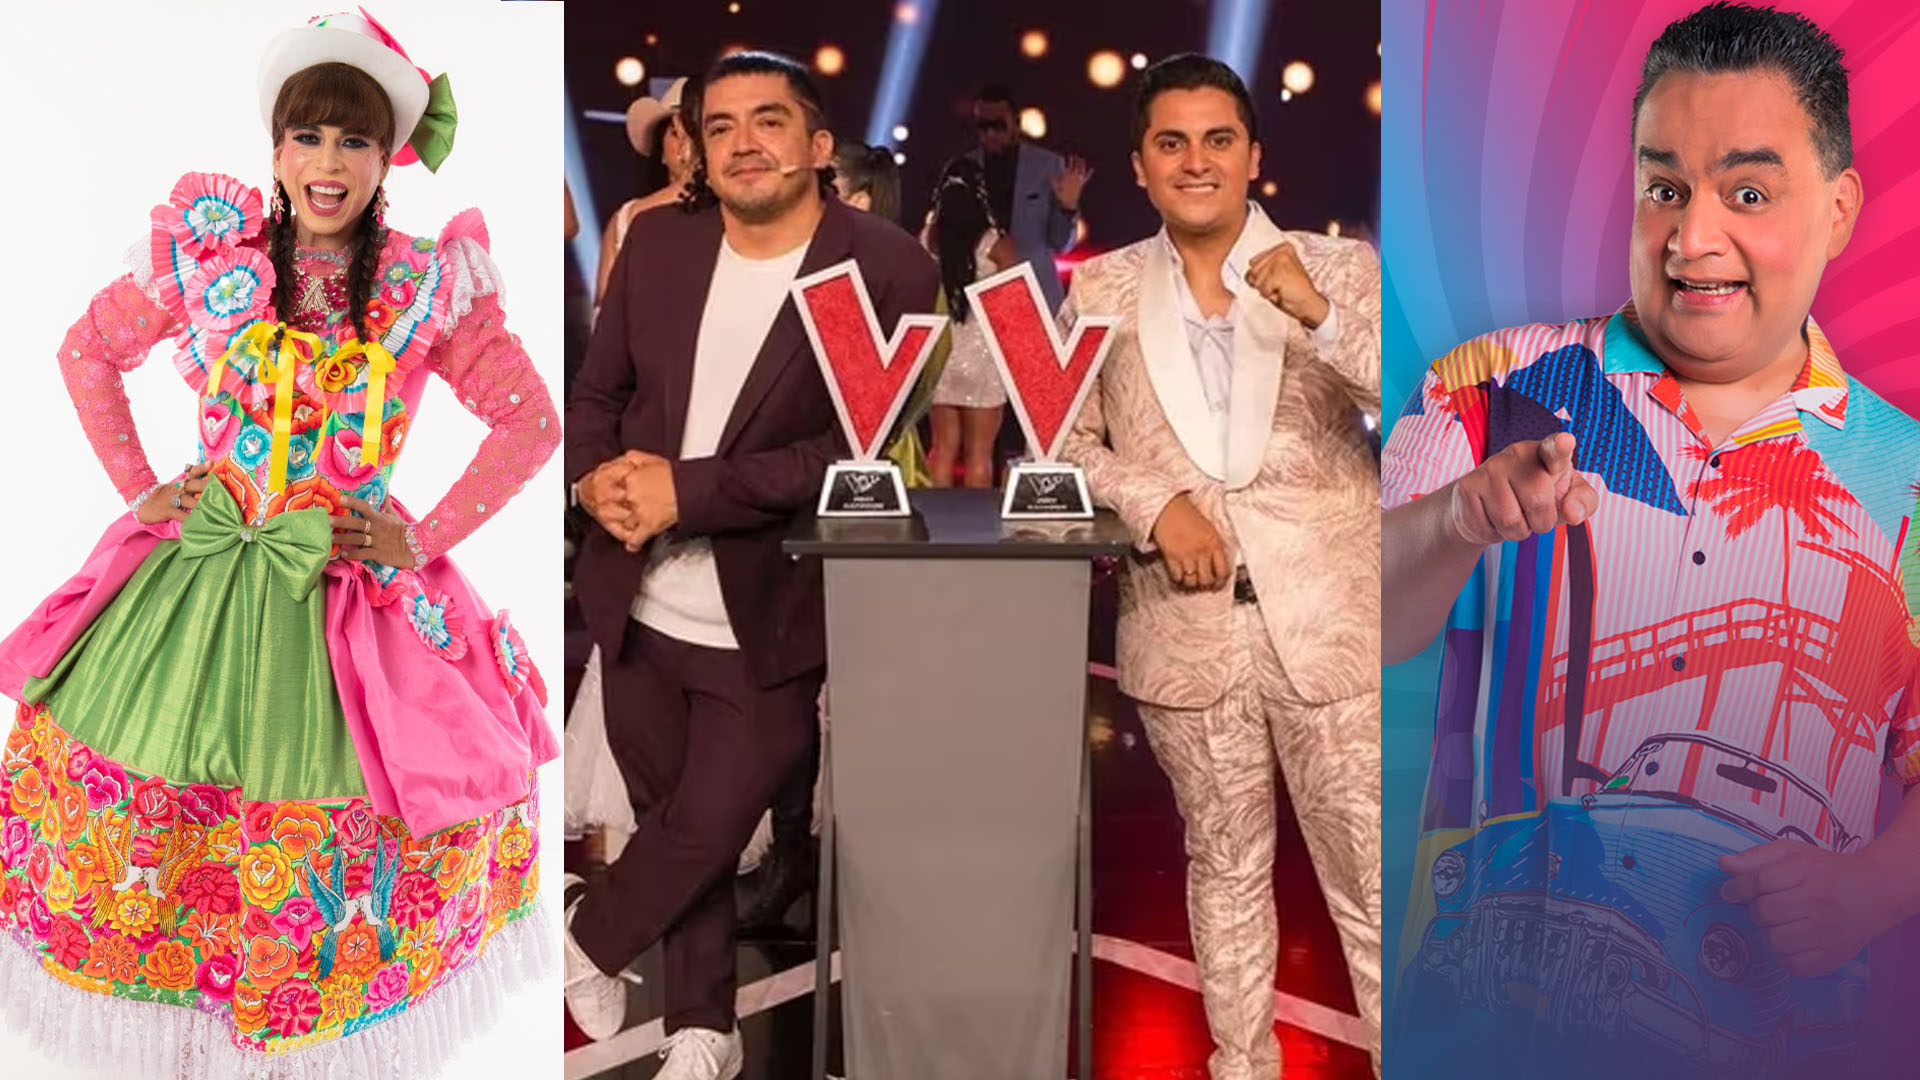 La Voz Perú, JB en ATV o El Reventonazo de la Chola: ¿Qué programa ganó en rating el sábado ?